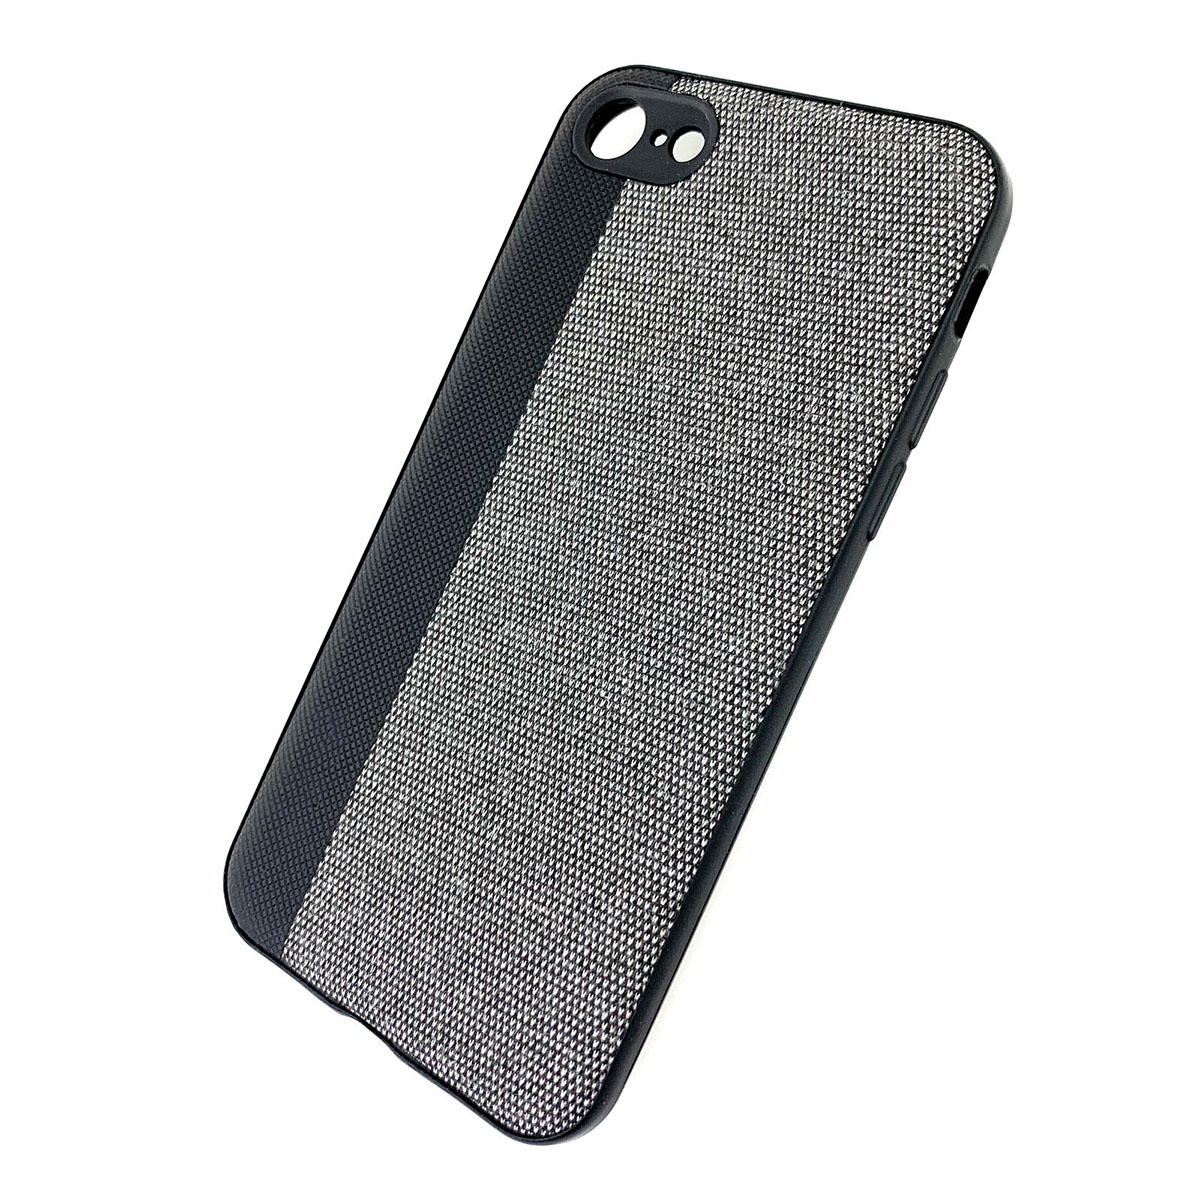 Чехол накладка для APPLE iPhone 7, 8, силикон, комбинированная, цвет черно серый.